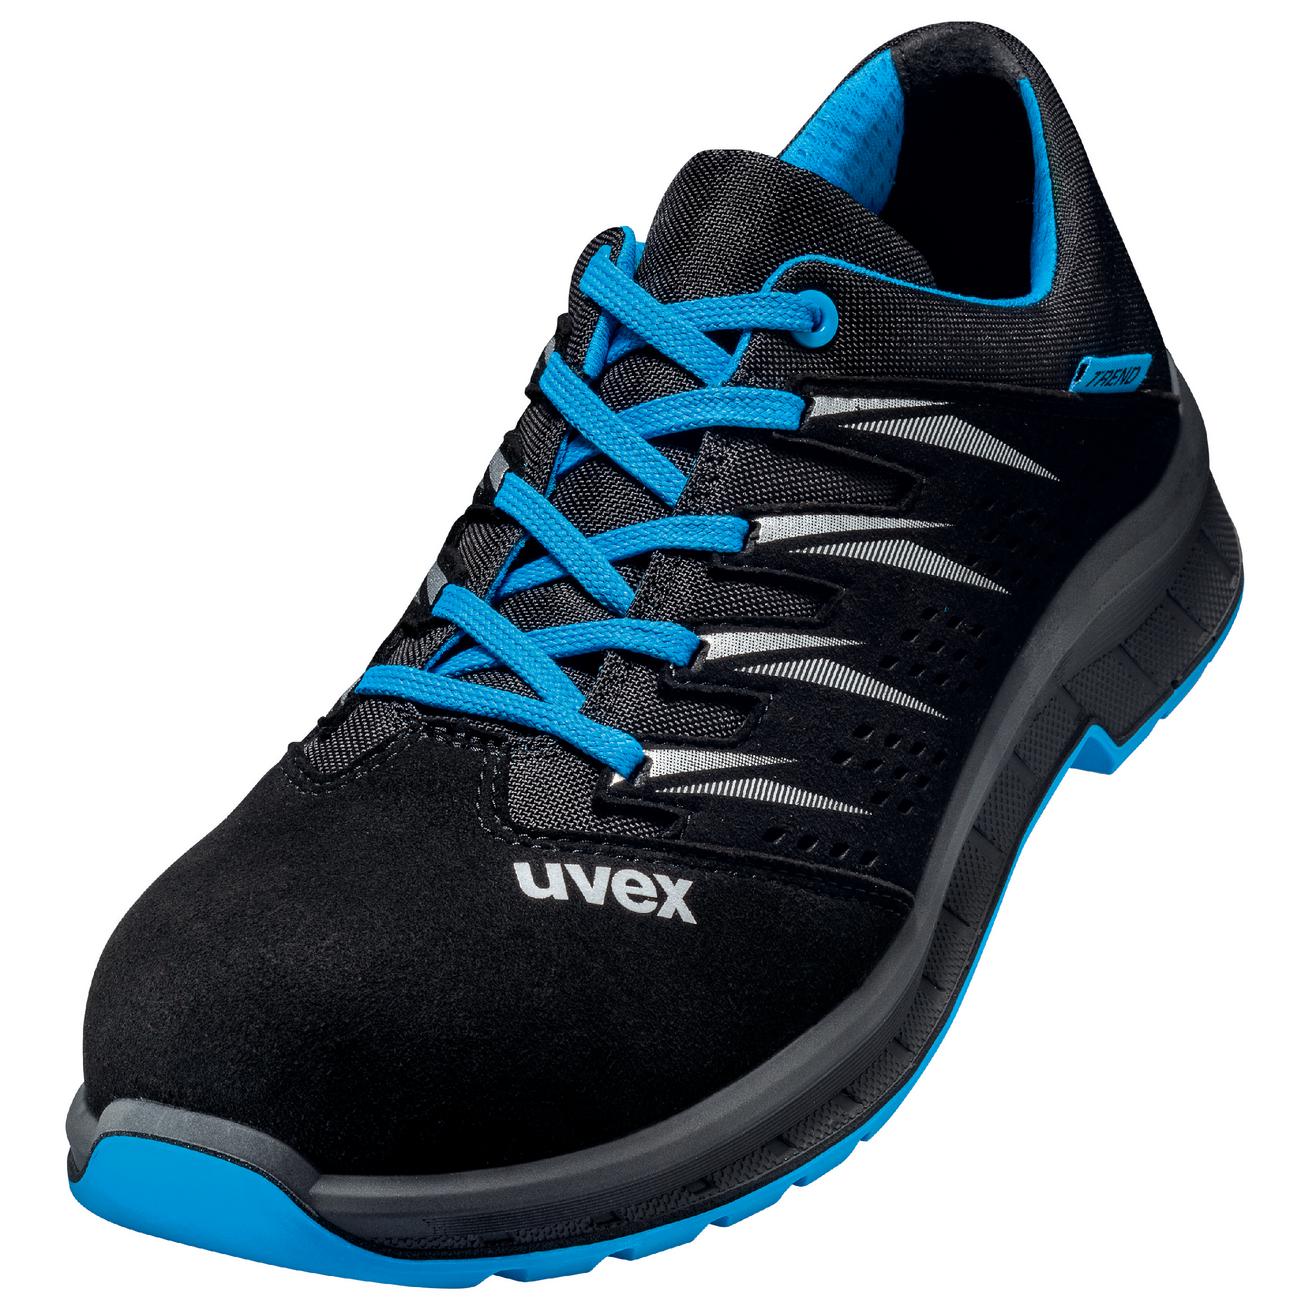 Perf. polobotka obuv uvex 2 trend, šíře 11, S1 SRC, černá/modrá 6937 Velikost: 38, Kód produktu: 6937838